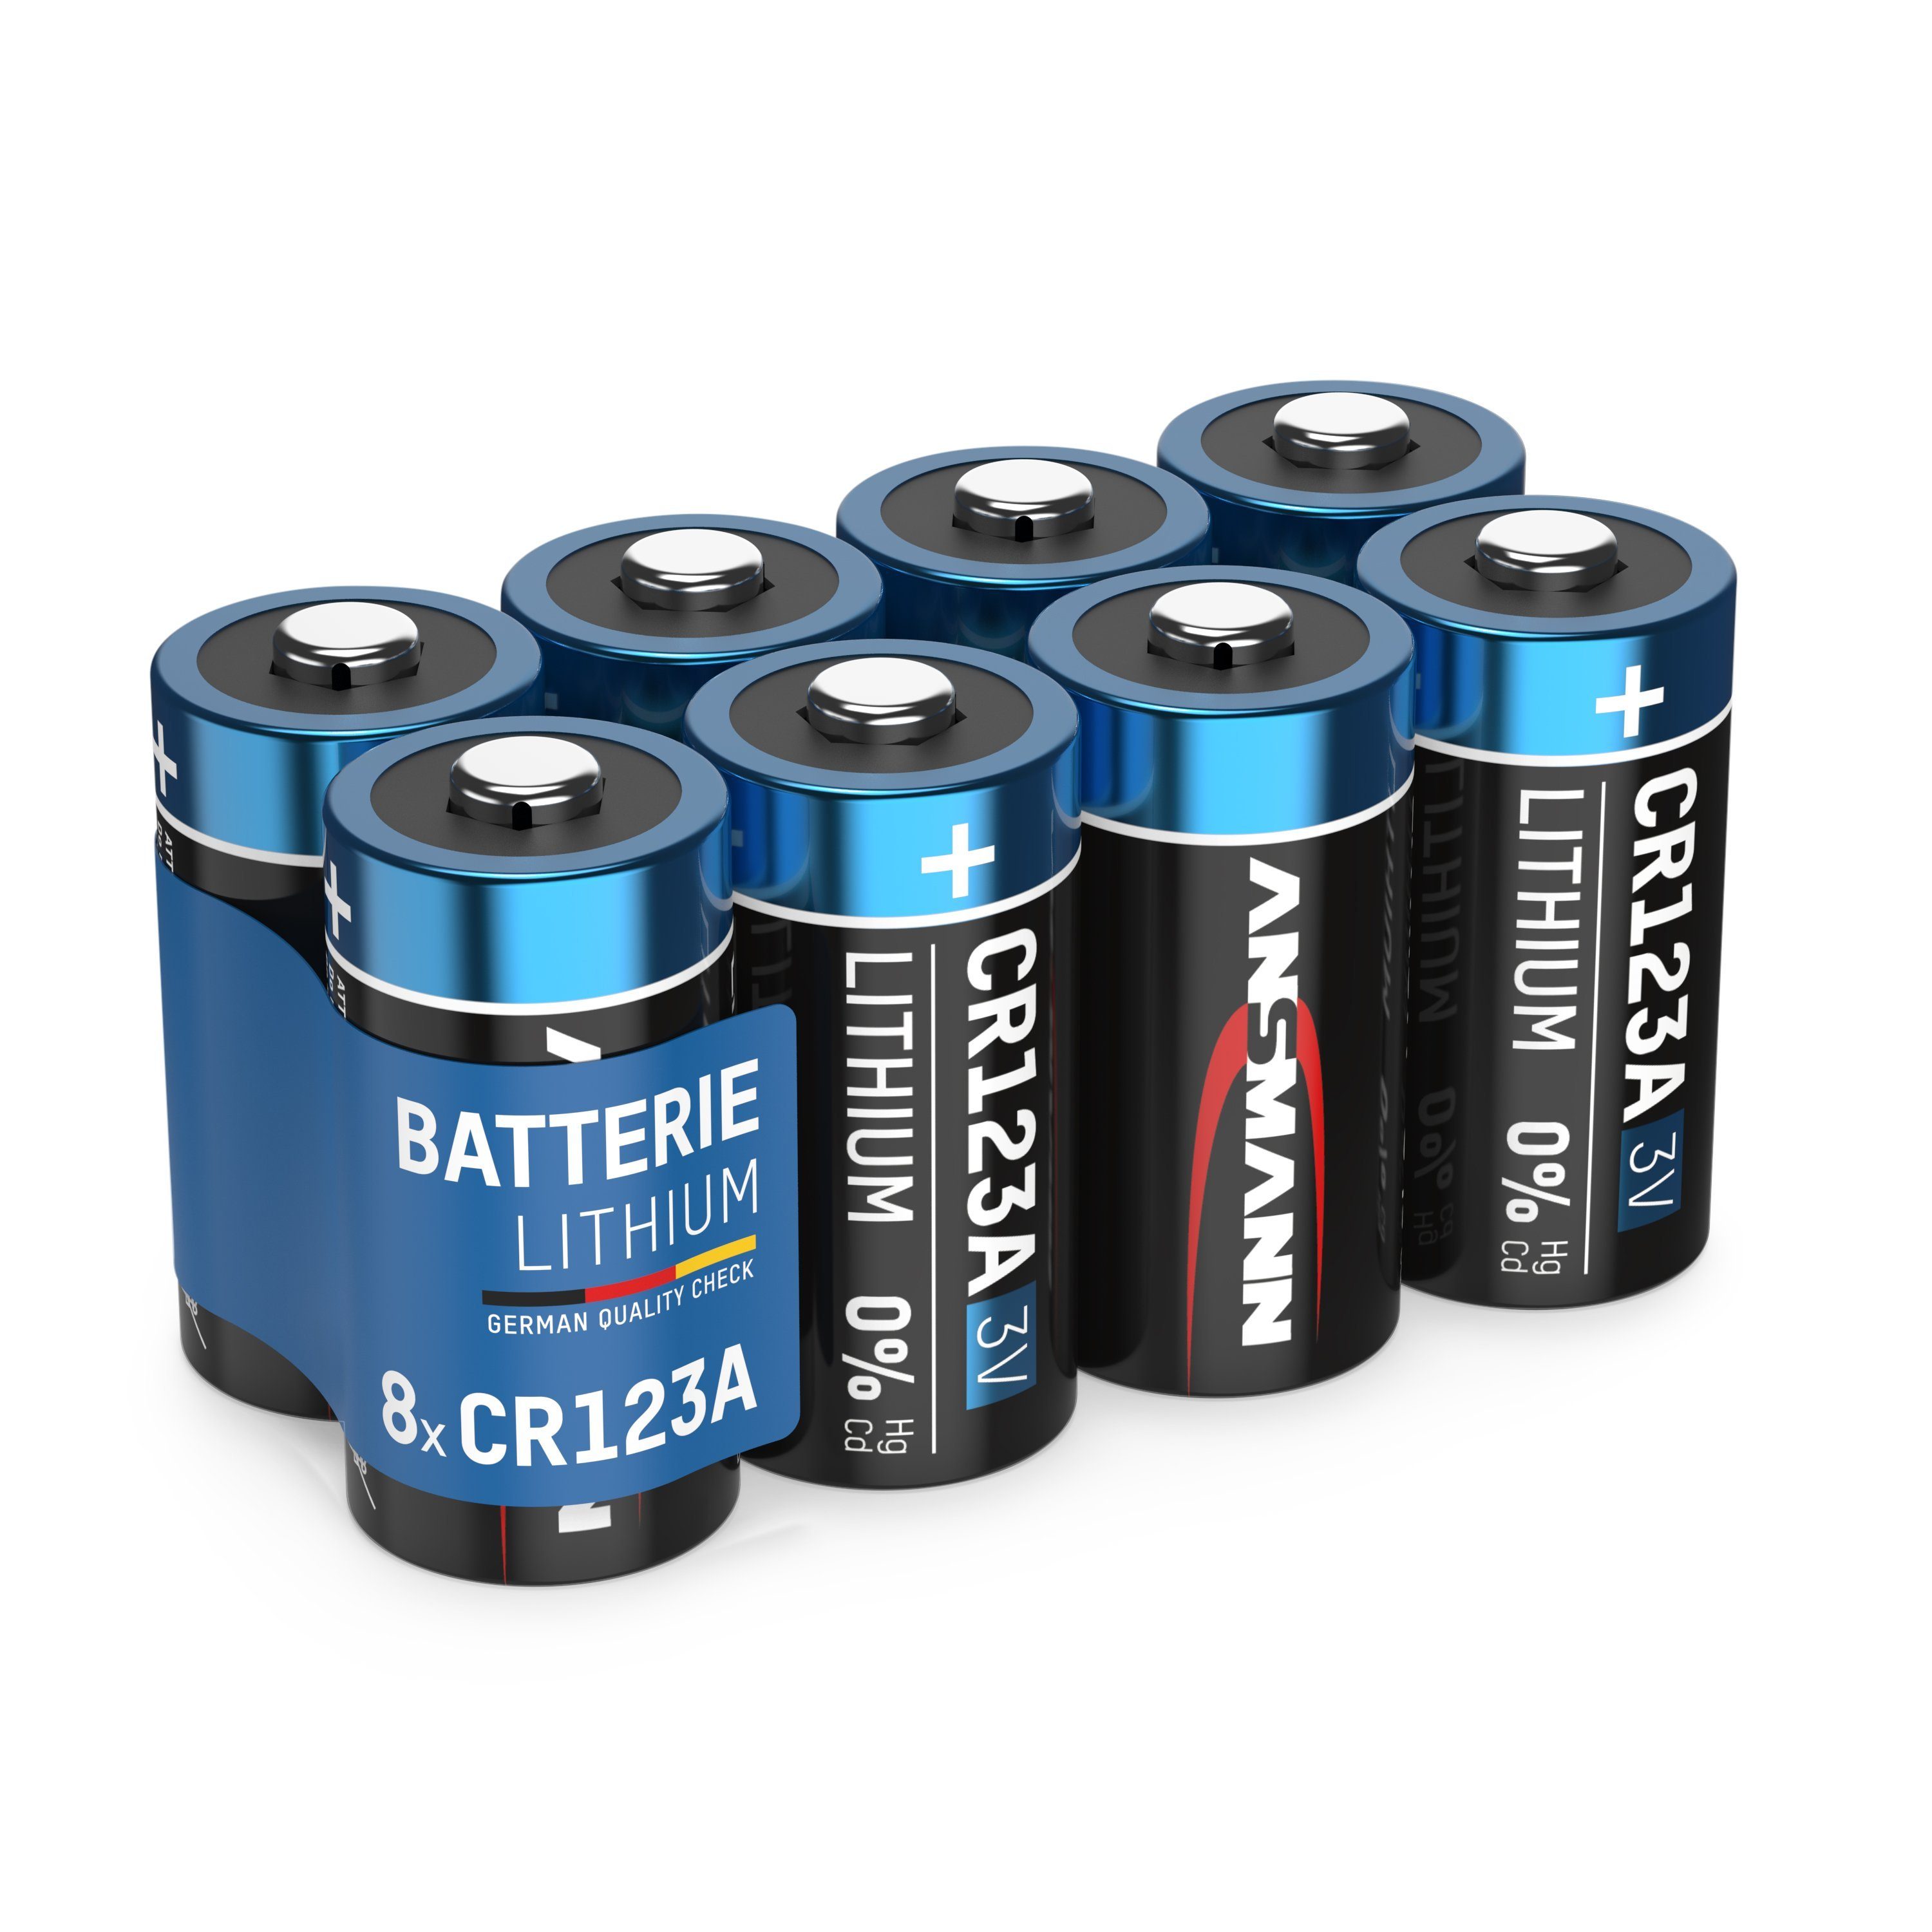 ANSMANN® 8x CR123A Lithium Batterie 3V - Hochleistungsbatterie (8 Stück) Batterie